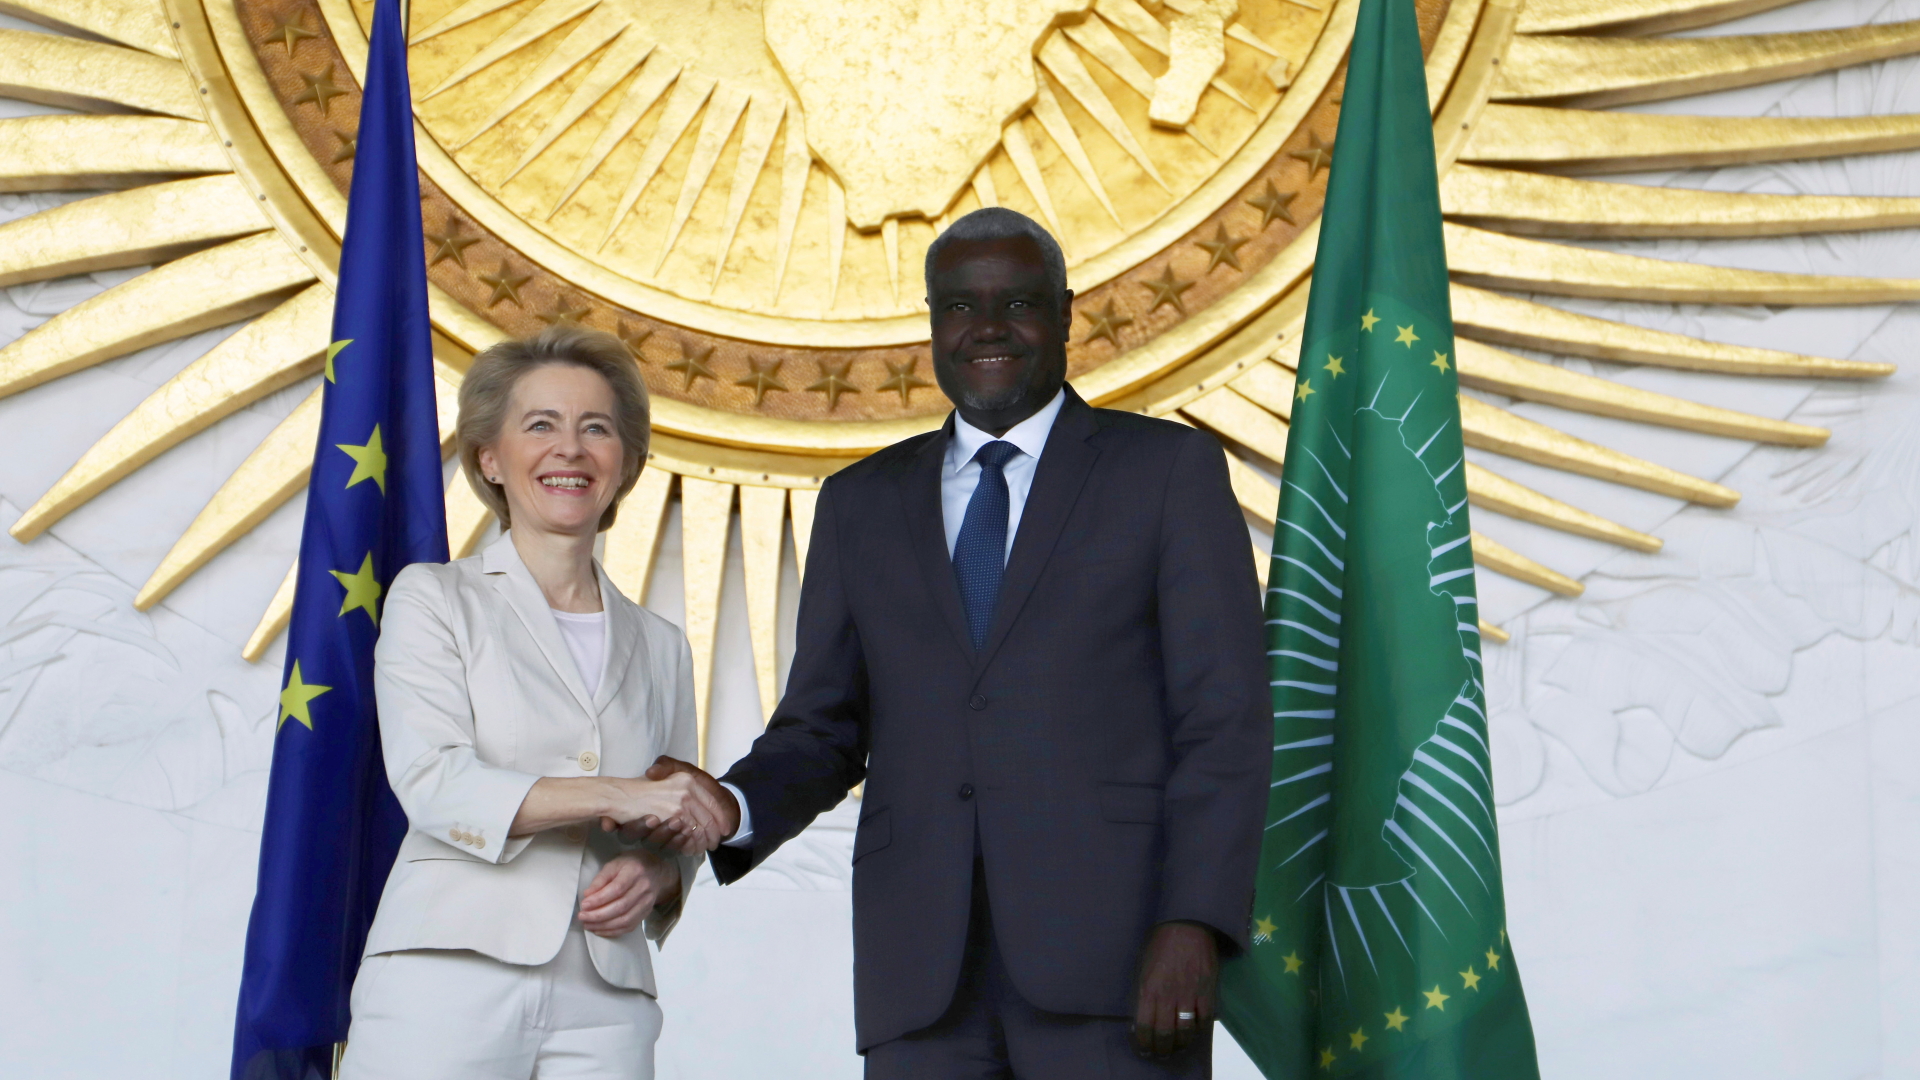 EU-Kommissionspräsidentin Ursula von der Leyen bei Handschlag mit dem Chef der Afrikanischen Union, Moussa Faki. | Bildquelle: REUTERS